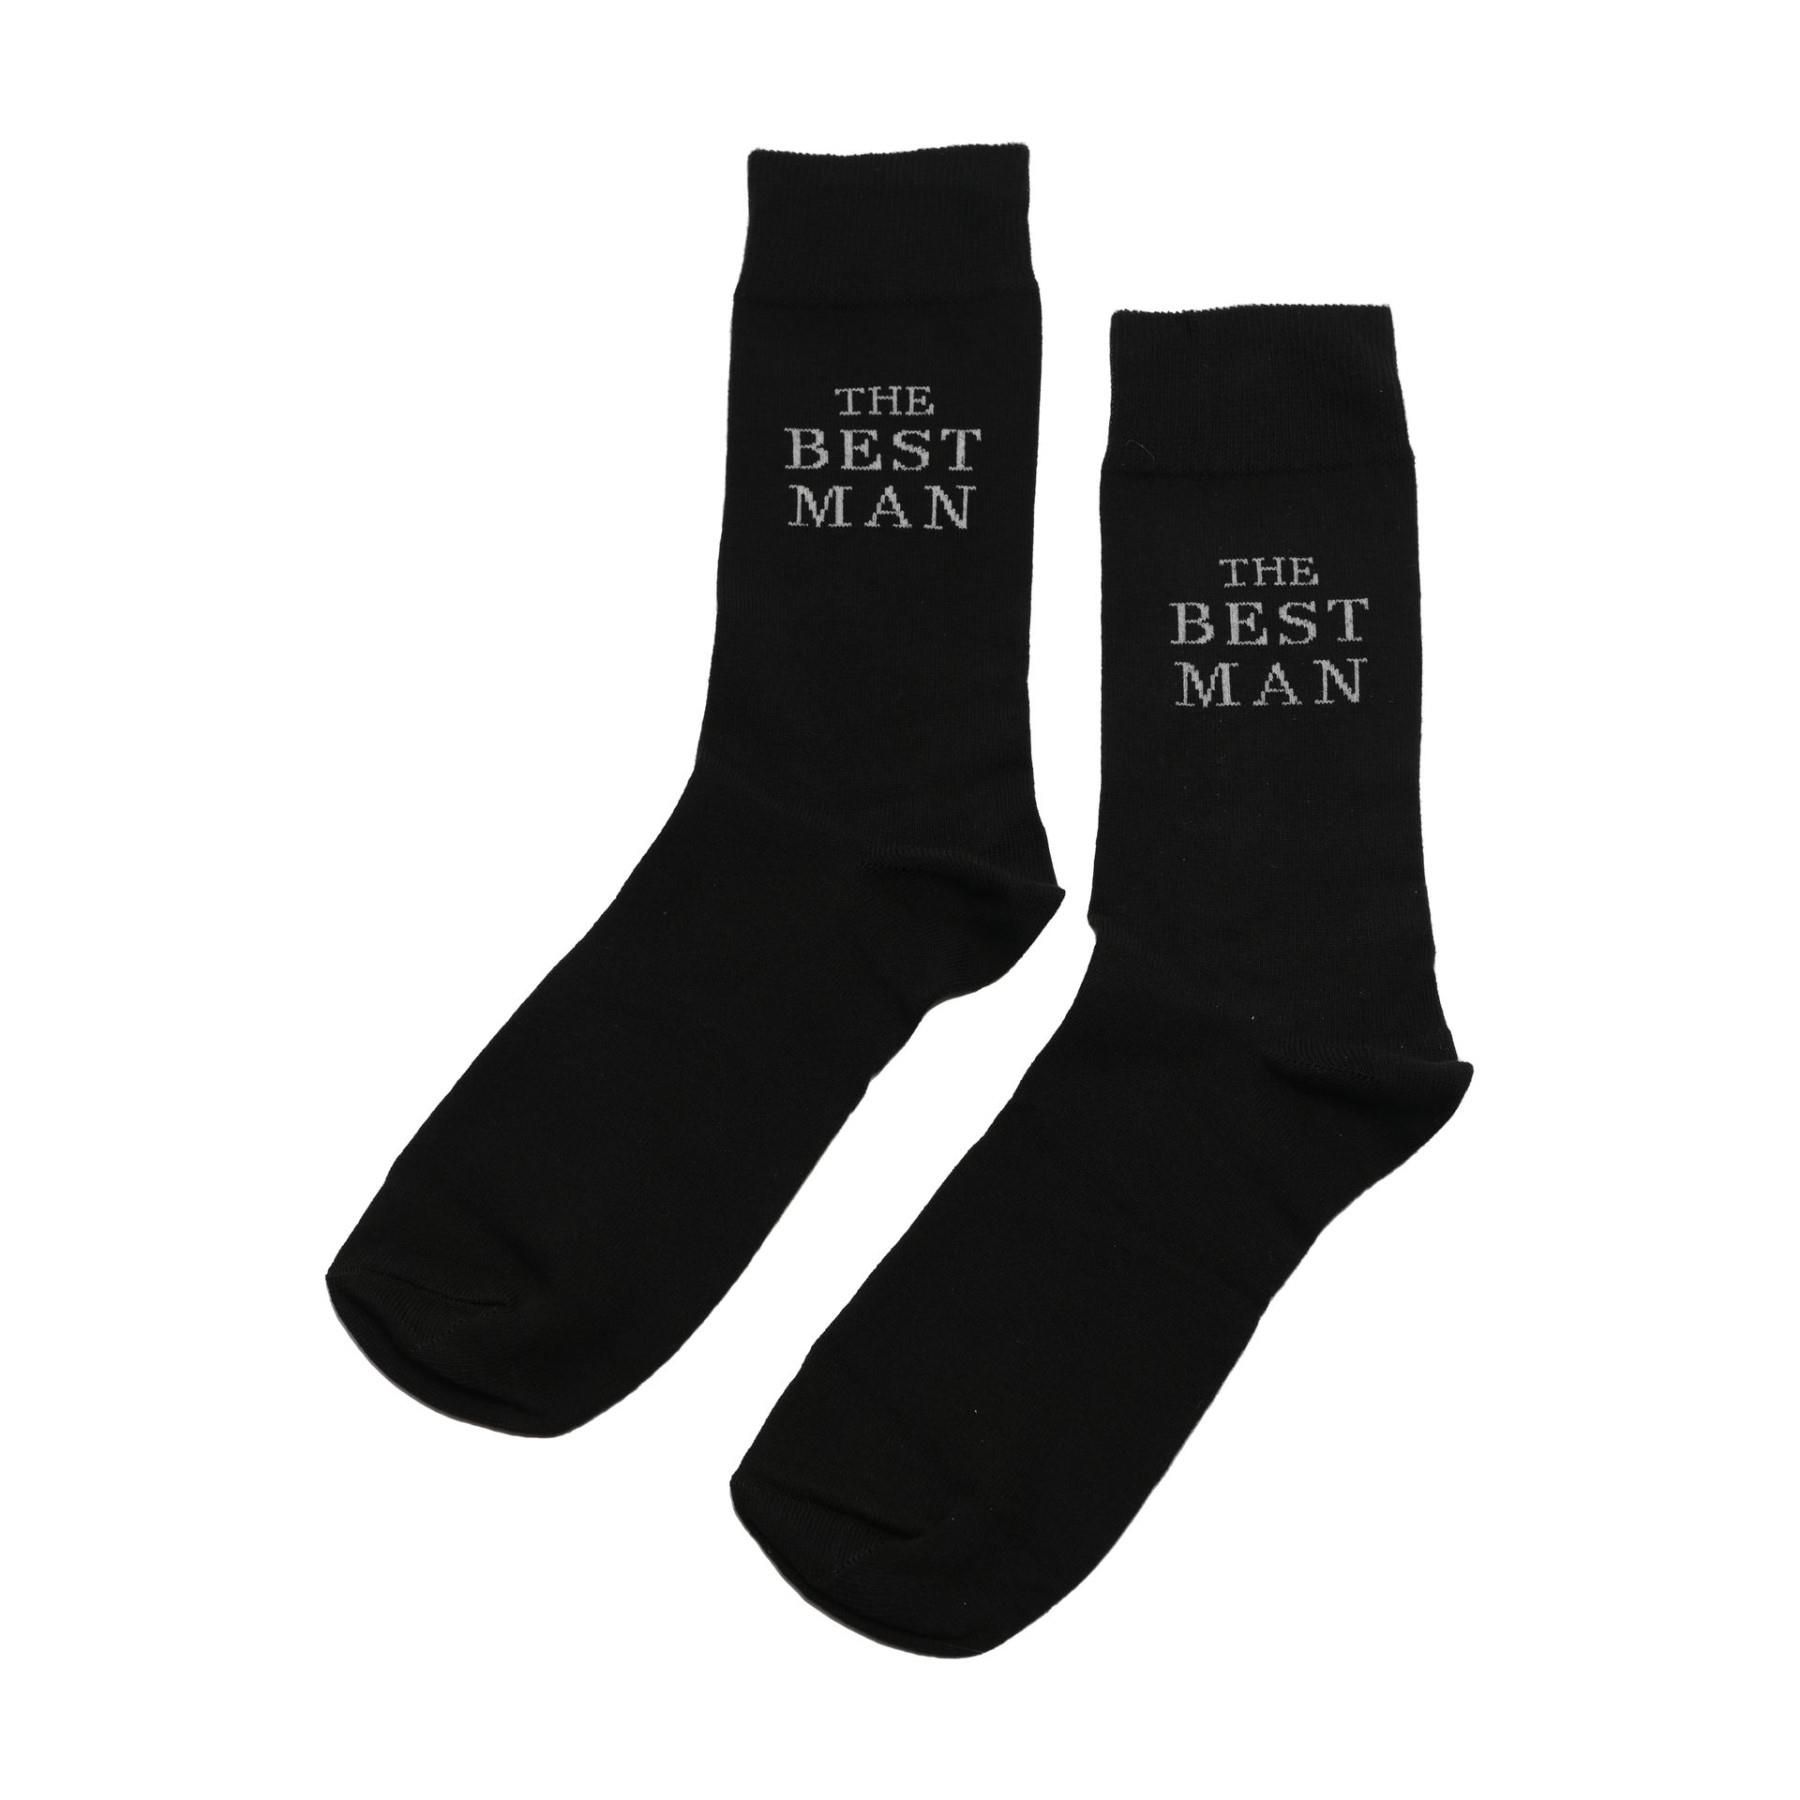 Men's Black Socks Wedding Gift - The Best Man